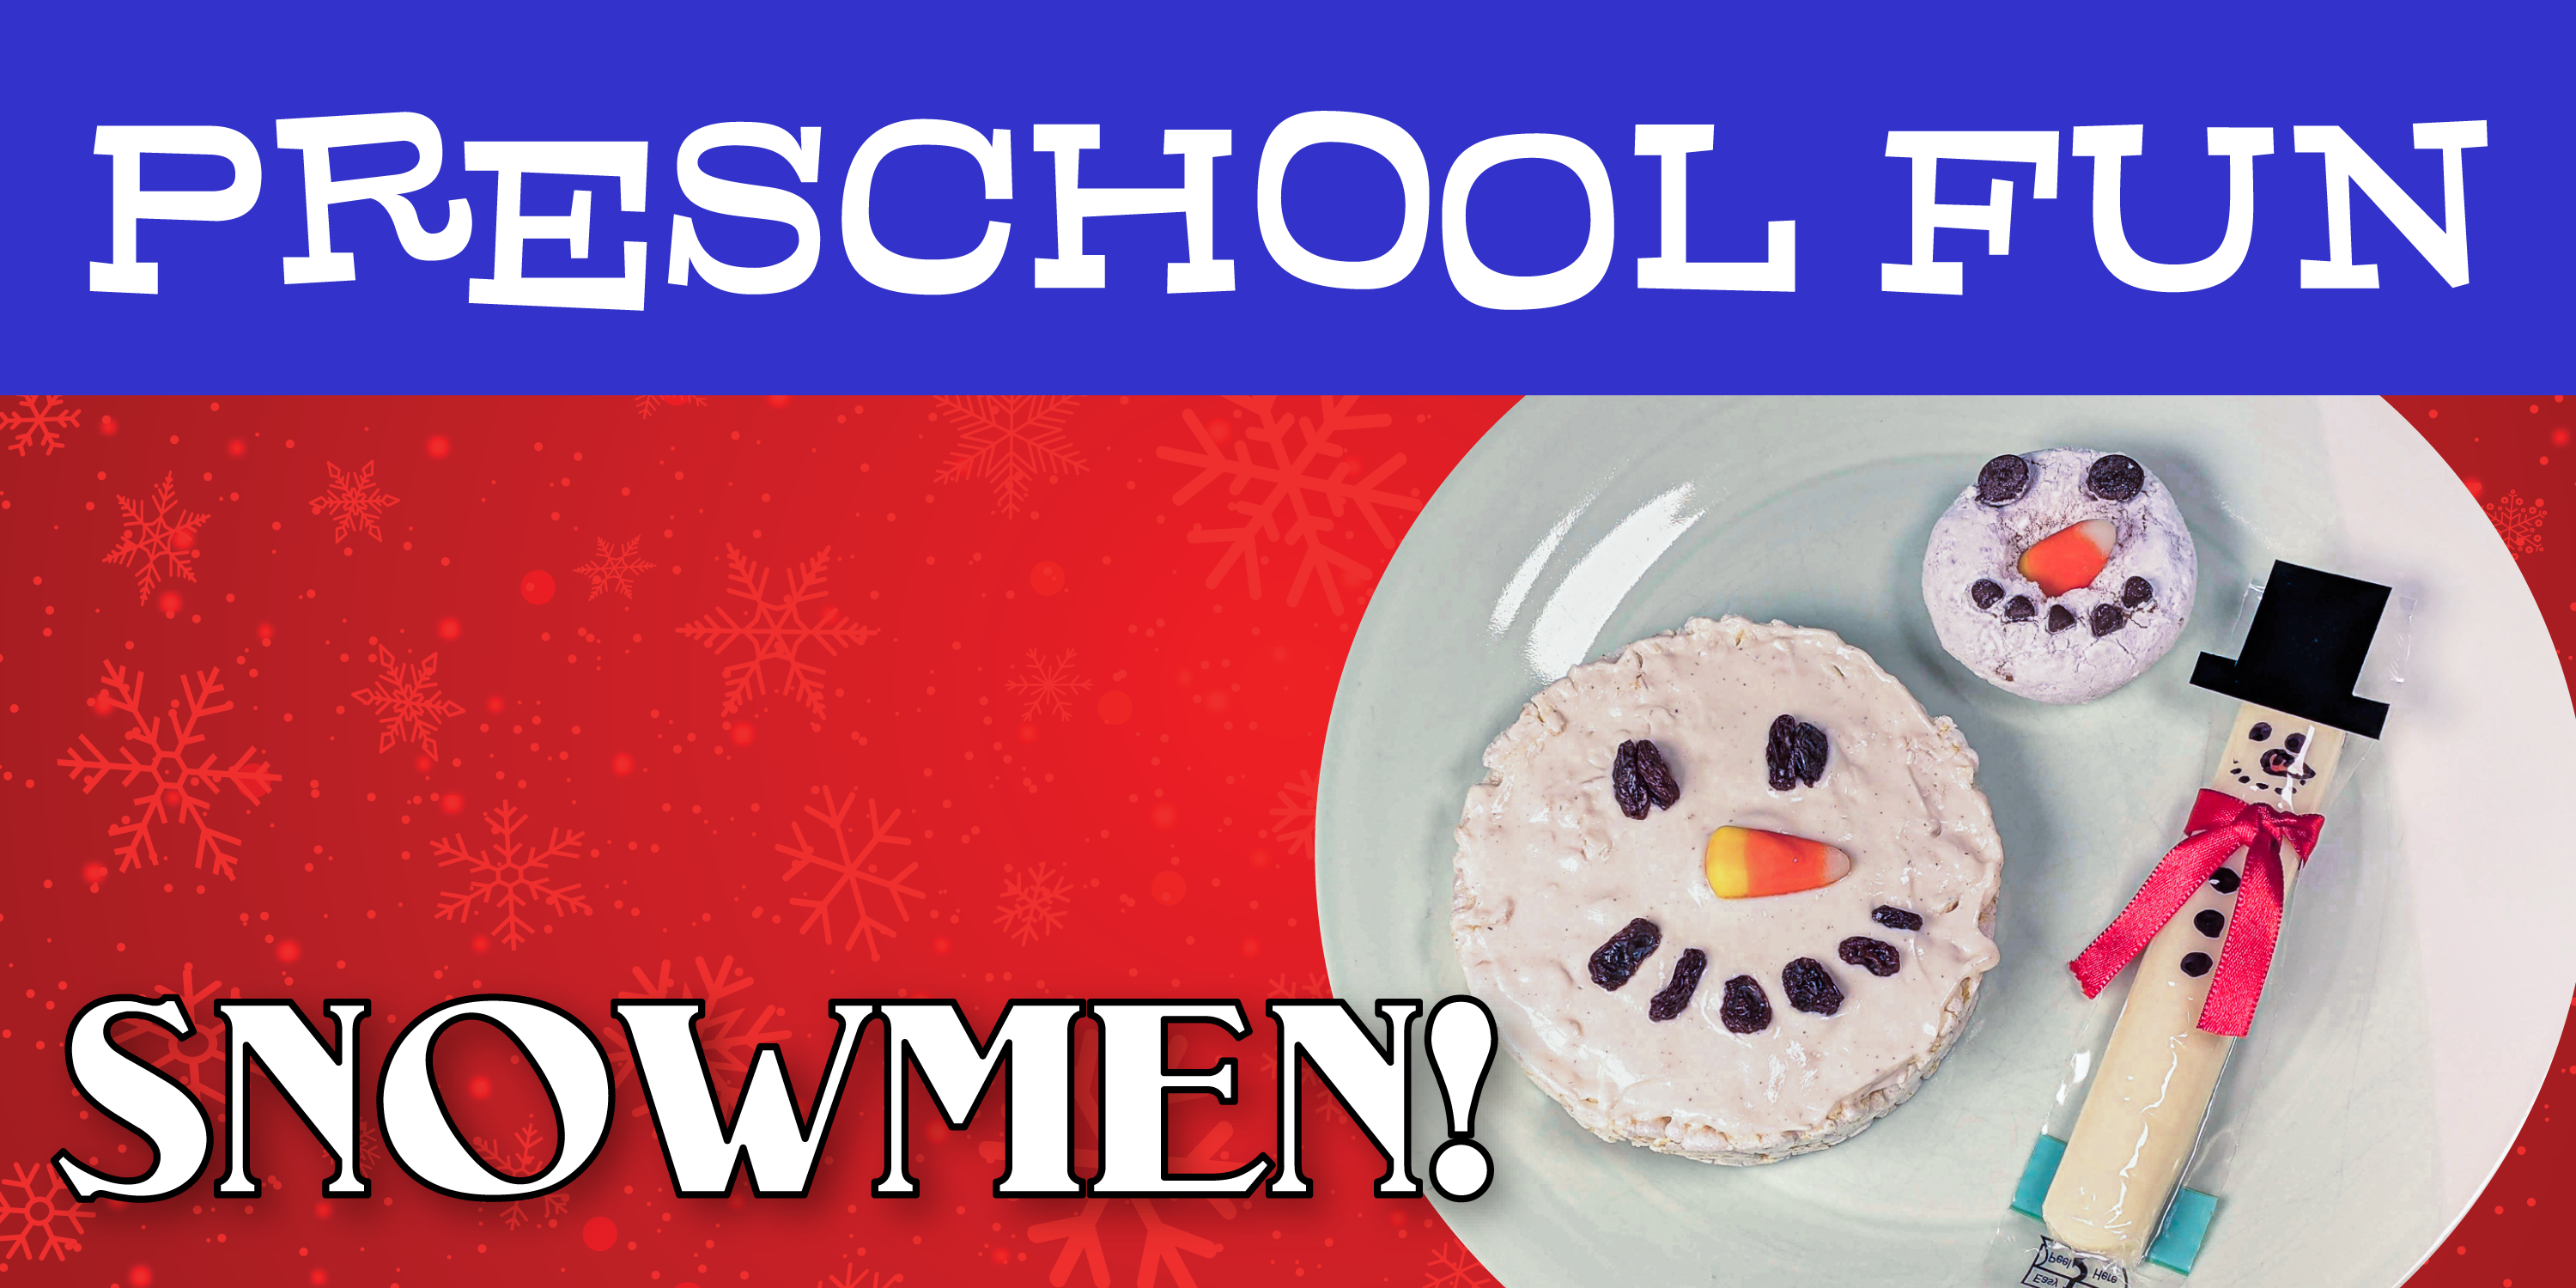 Preschool Fun: Snowmen!